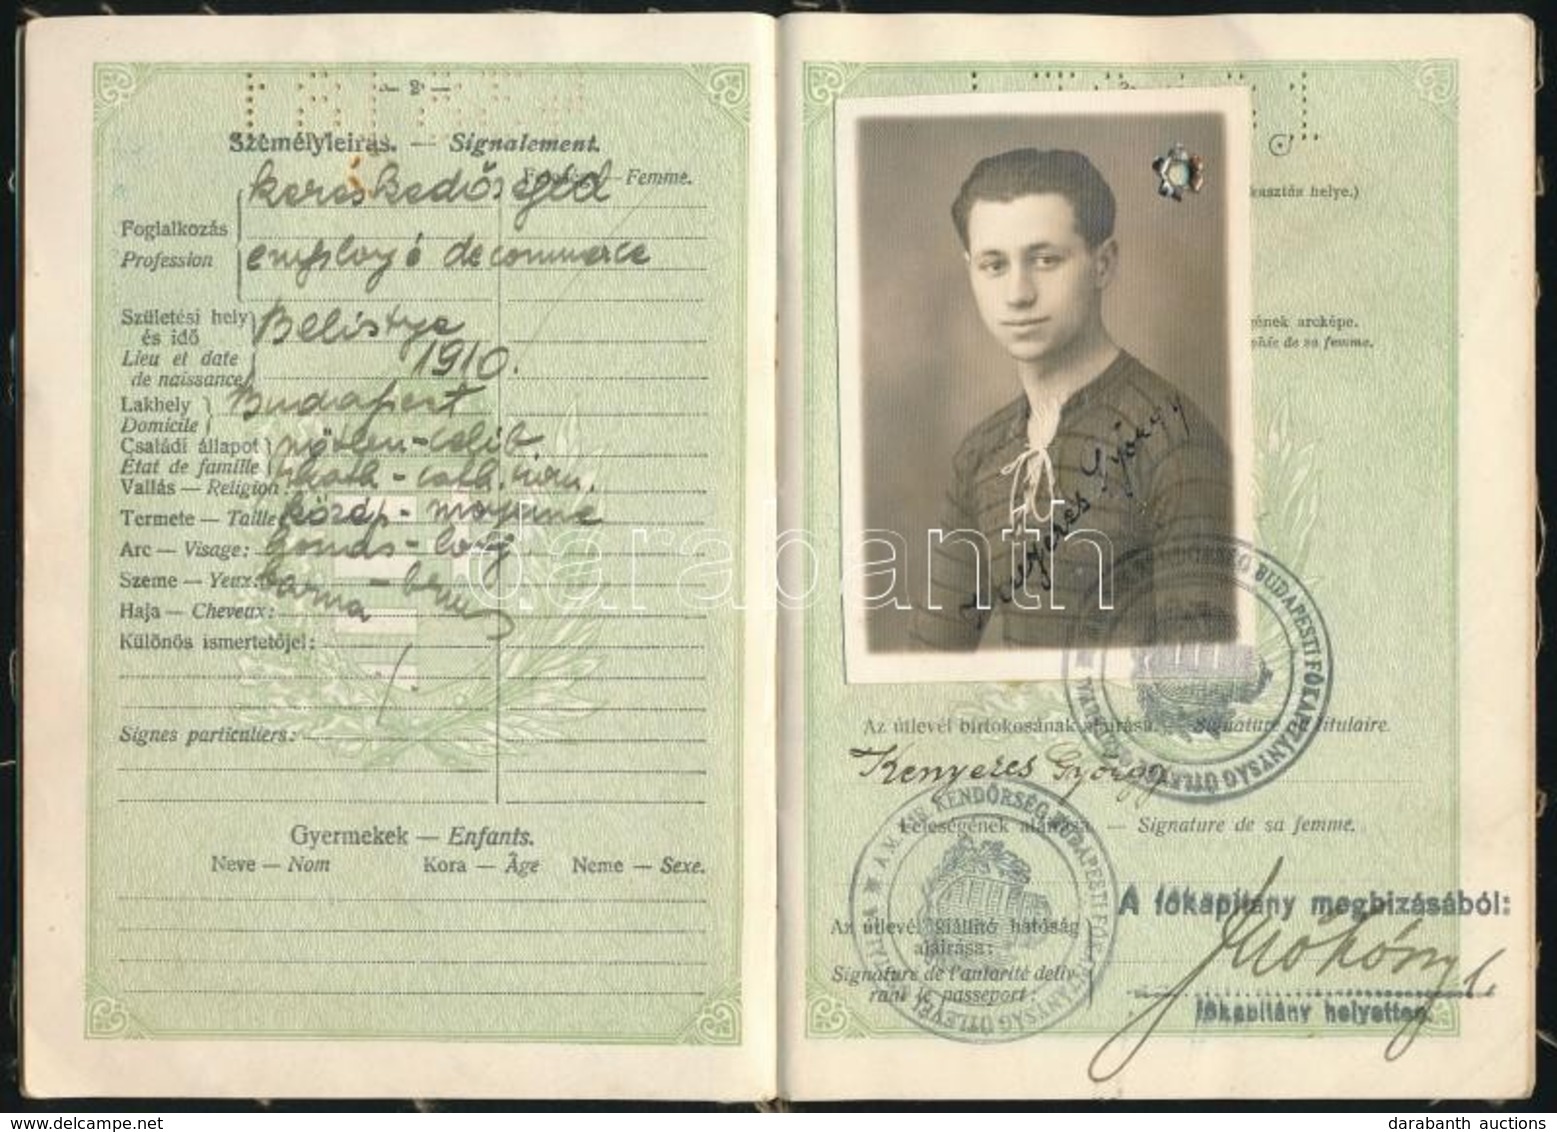 1934-1936 Magyar Királyság Fényképes útlevele Kereskedősegéd Részére, Csehszlovák Bejegyzésekkel. - Non Classés